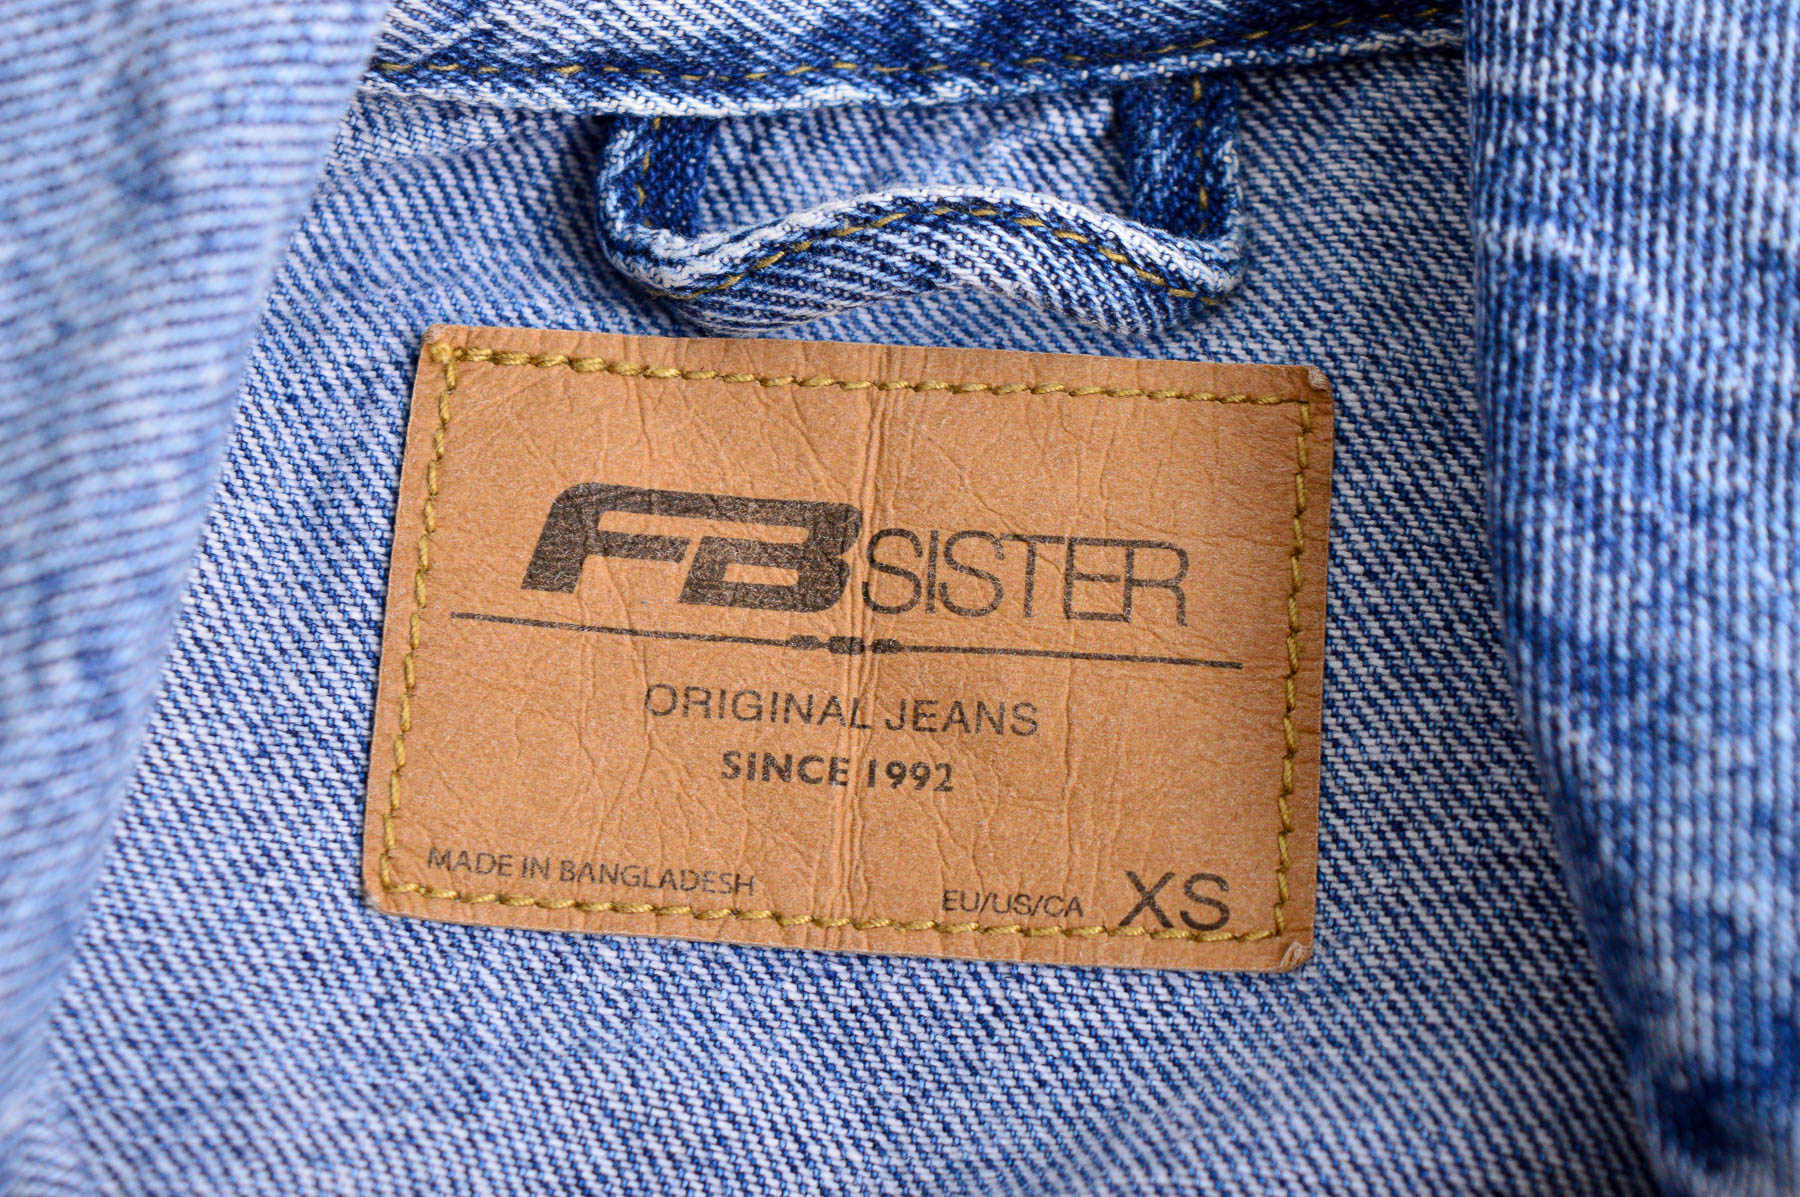 Geacă de jeans pentru femeie - FB Sister - 2